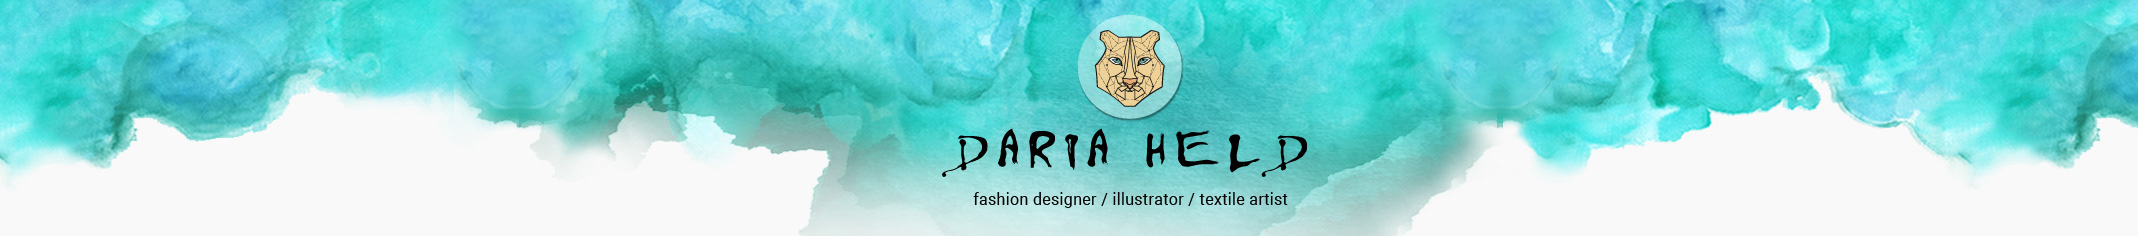 Daria Held's profile banner